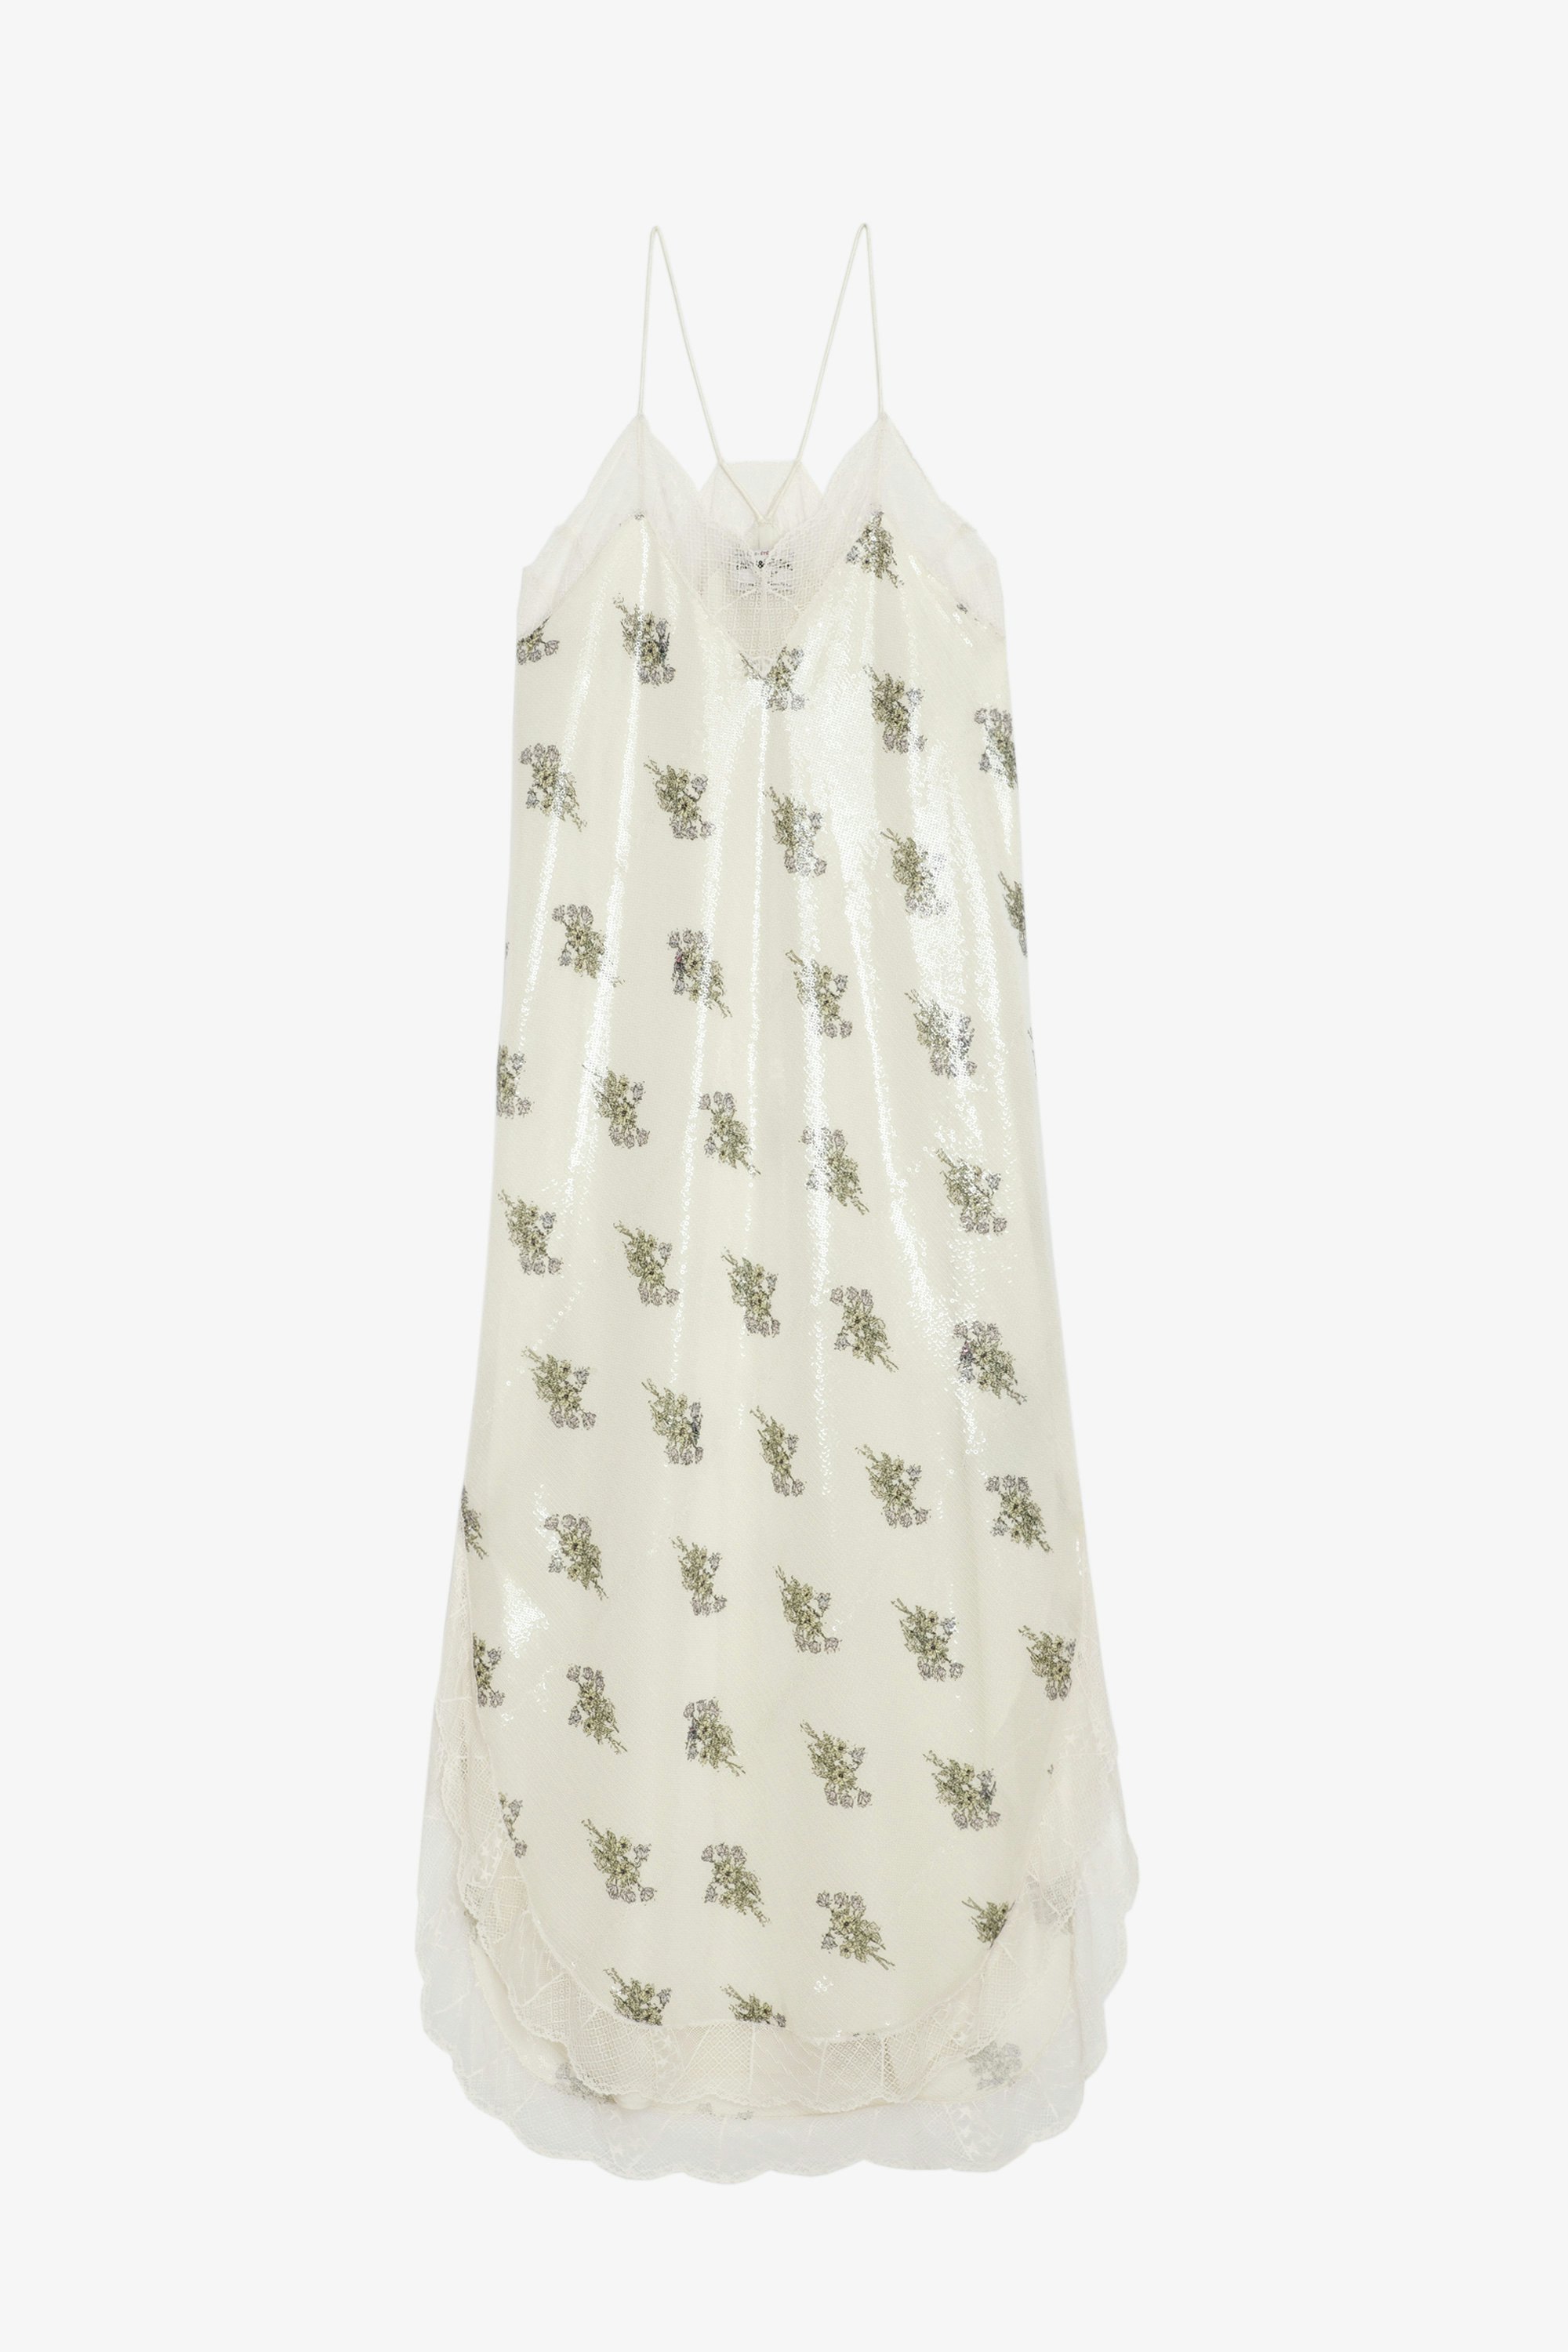 Robe Ristyl Sequins - Robe longue esprit lingerie écrue à imprimé fleuri, sequins, bretelles et bords en dentelle.